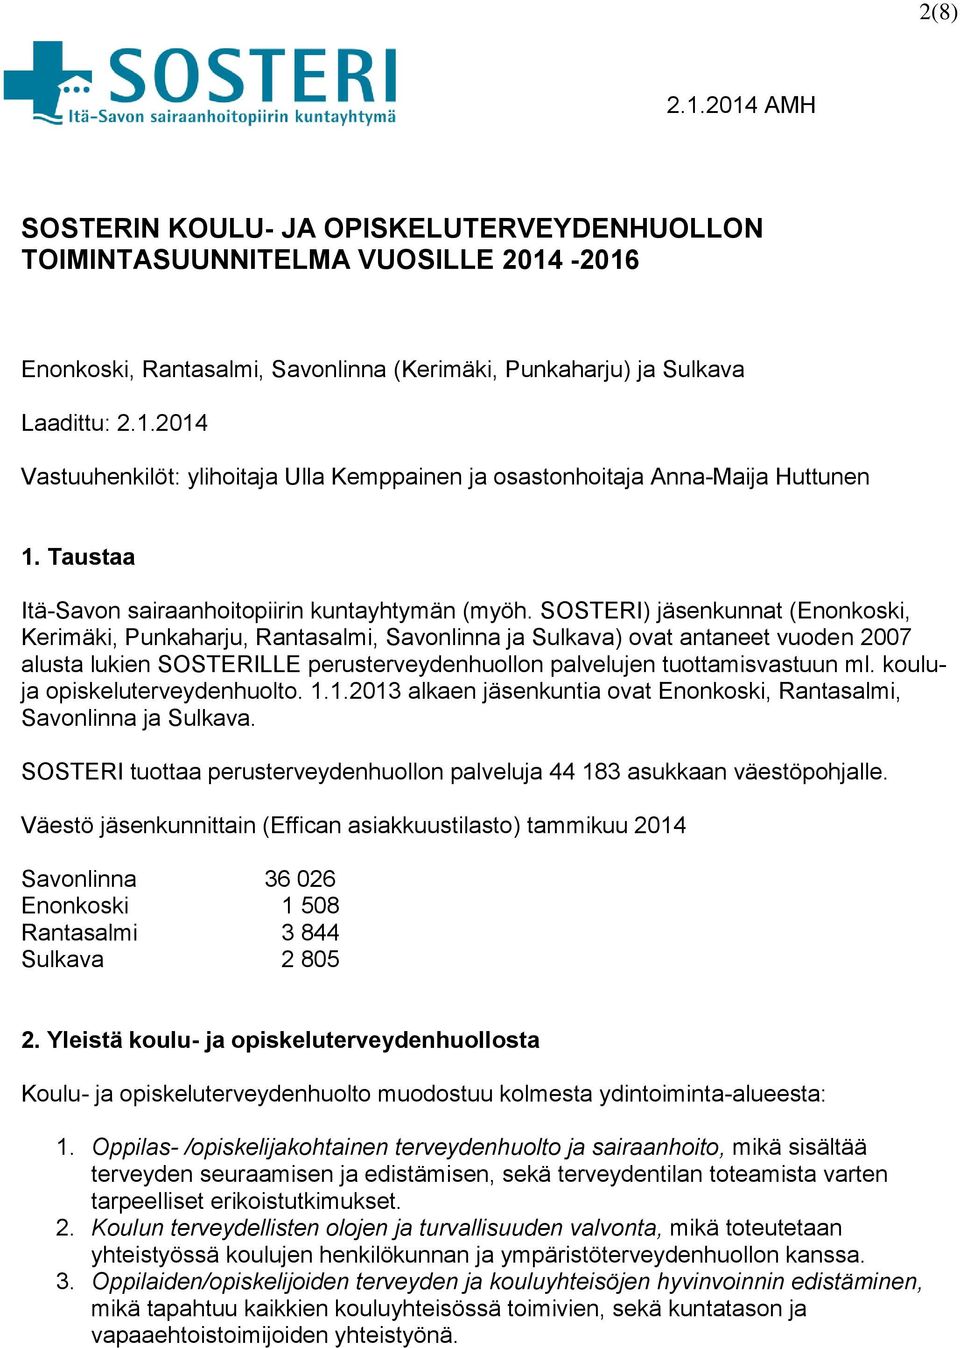 SOSTERI) jäsenkunnat (Enonkoski, Kerimäki, Punkaharju, Rantasalmi, Savonlinna ja Sulkava) ovat antaneet vuoden 2007 alusta lukien SOSTERILLE perusterveydenhuollon palvelujen tuottamisvastuun ml.